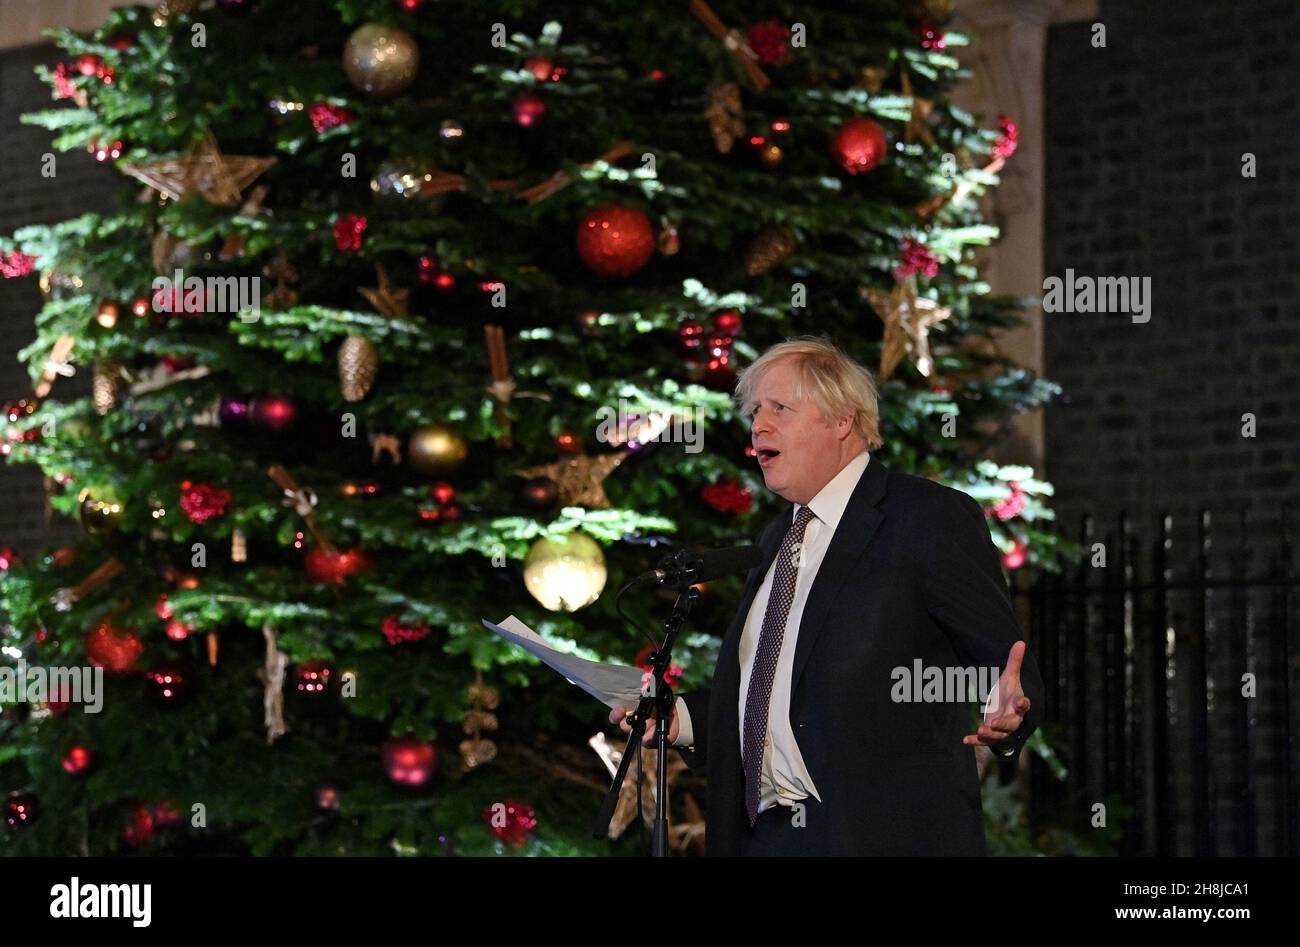 Premierminister Boris Johnson hält eine Rede, während er einen britischen Lebensmittel- und Getränkemarkt besucht, der in der Downing Street in London eingerichtet wurde. Bilddatum: Dienstag, 30. November 2021. Stockfoto